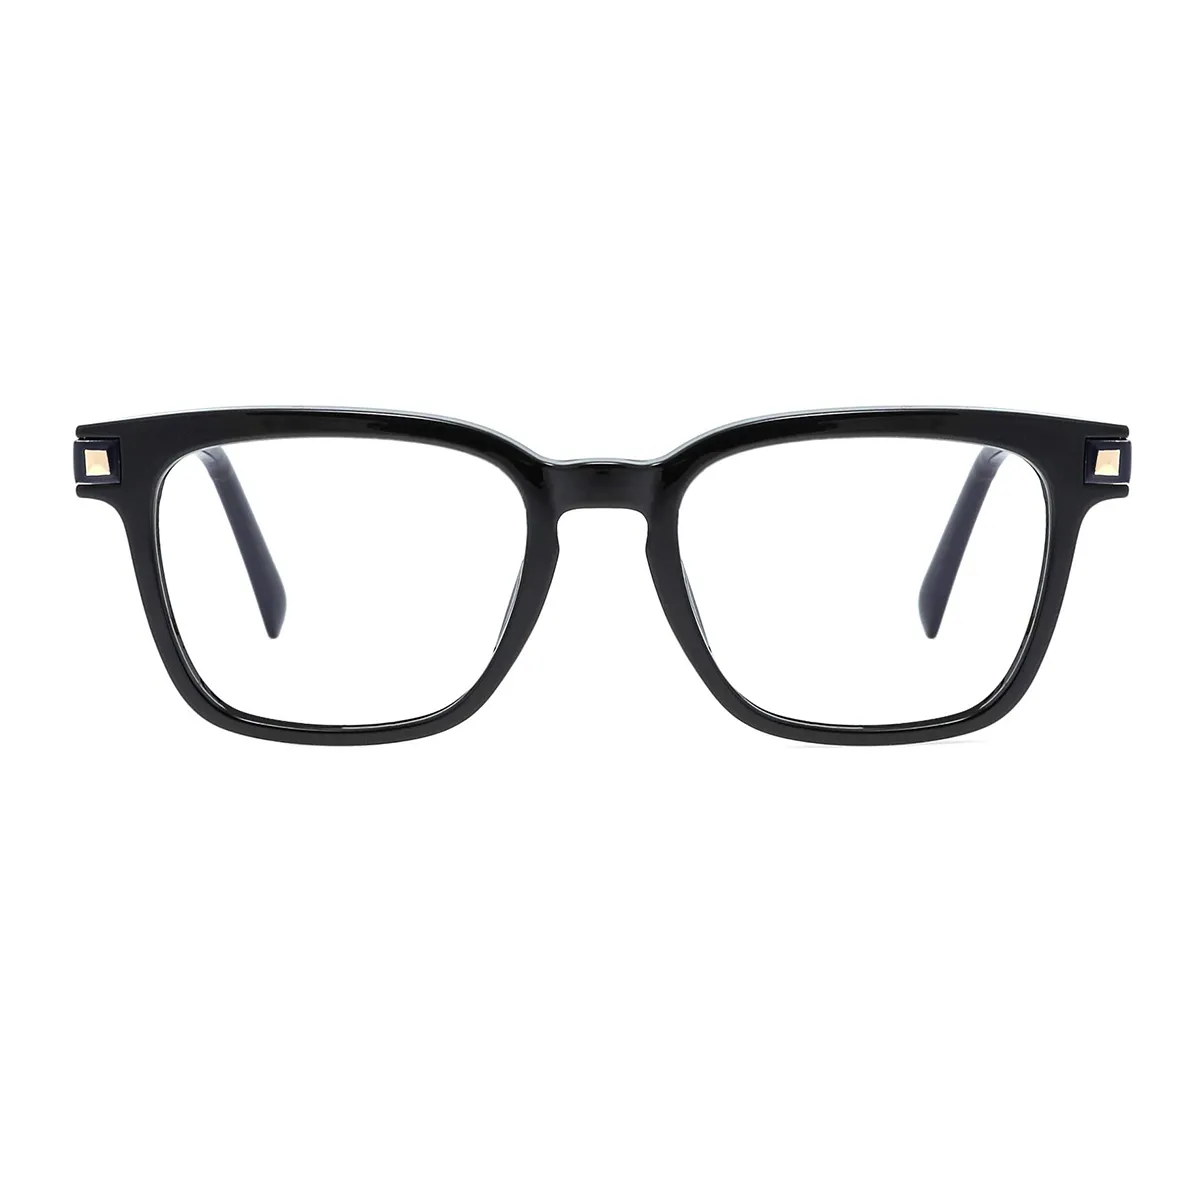 Fashion Square Black  Reading Glasses for Men